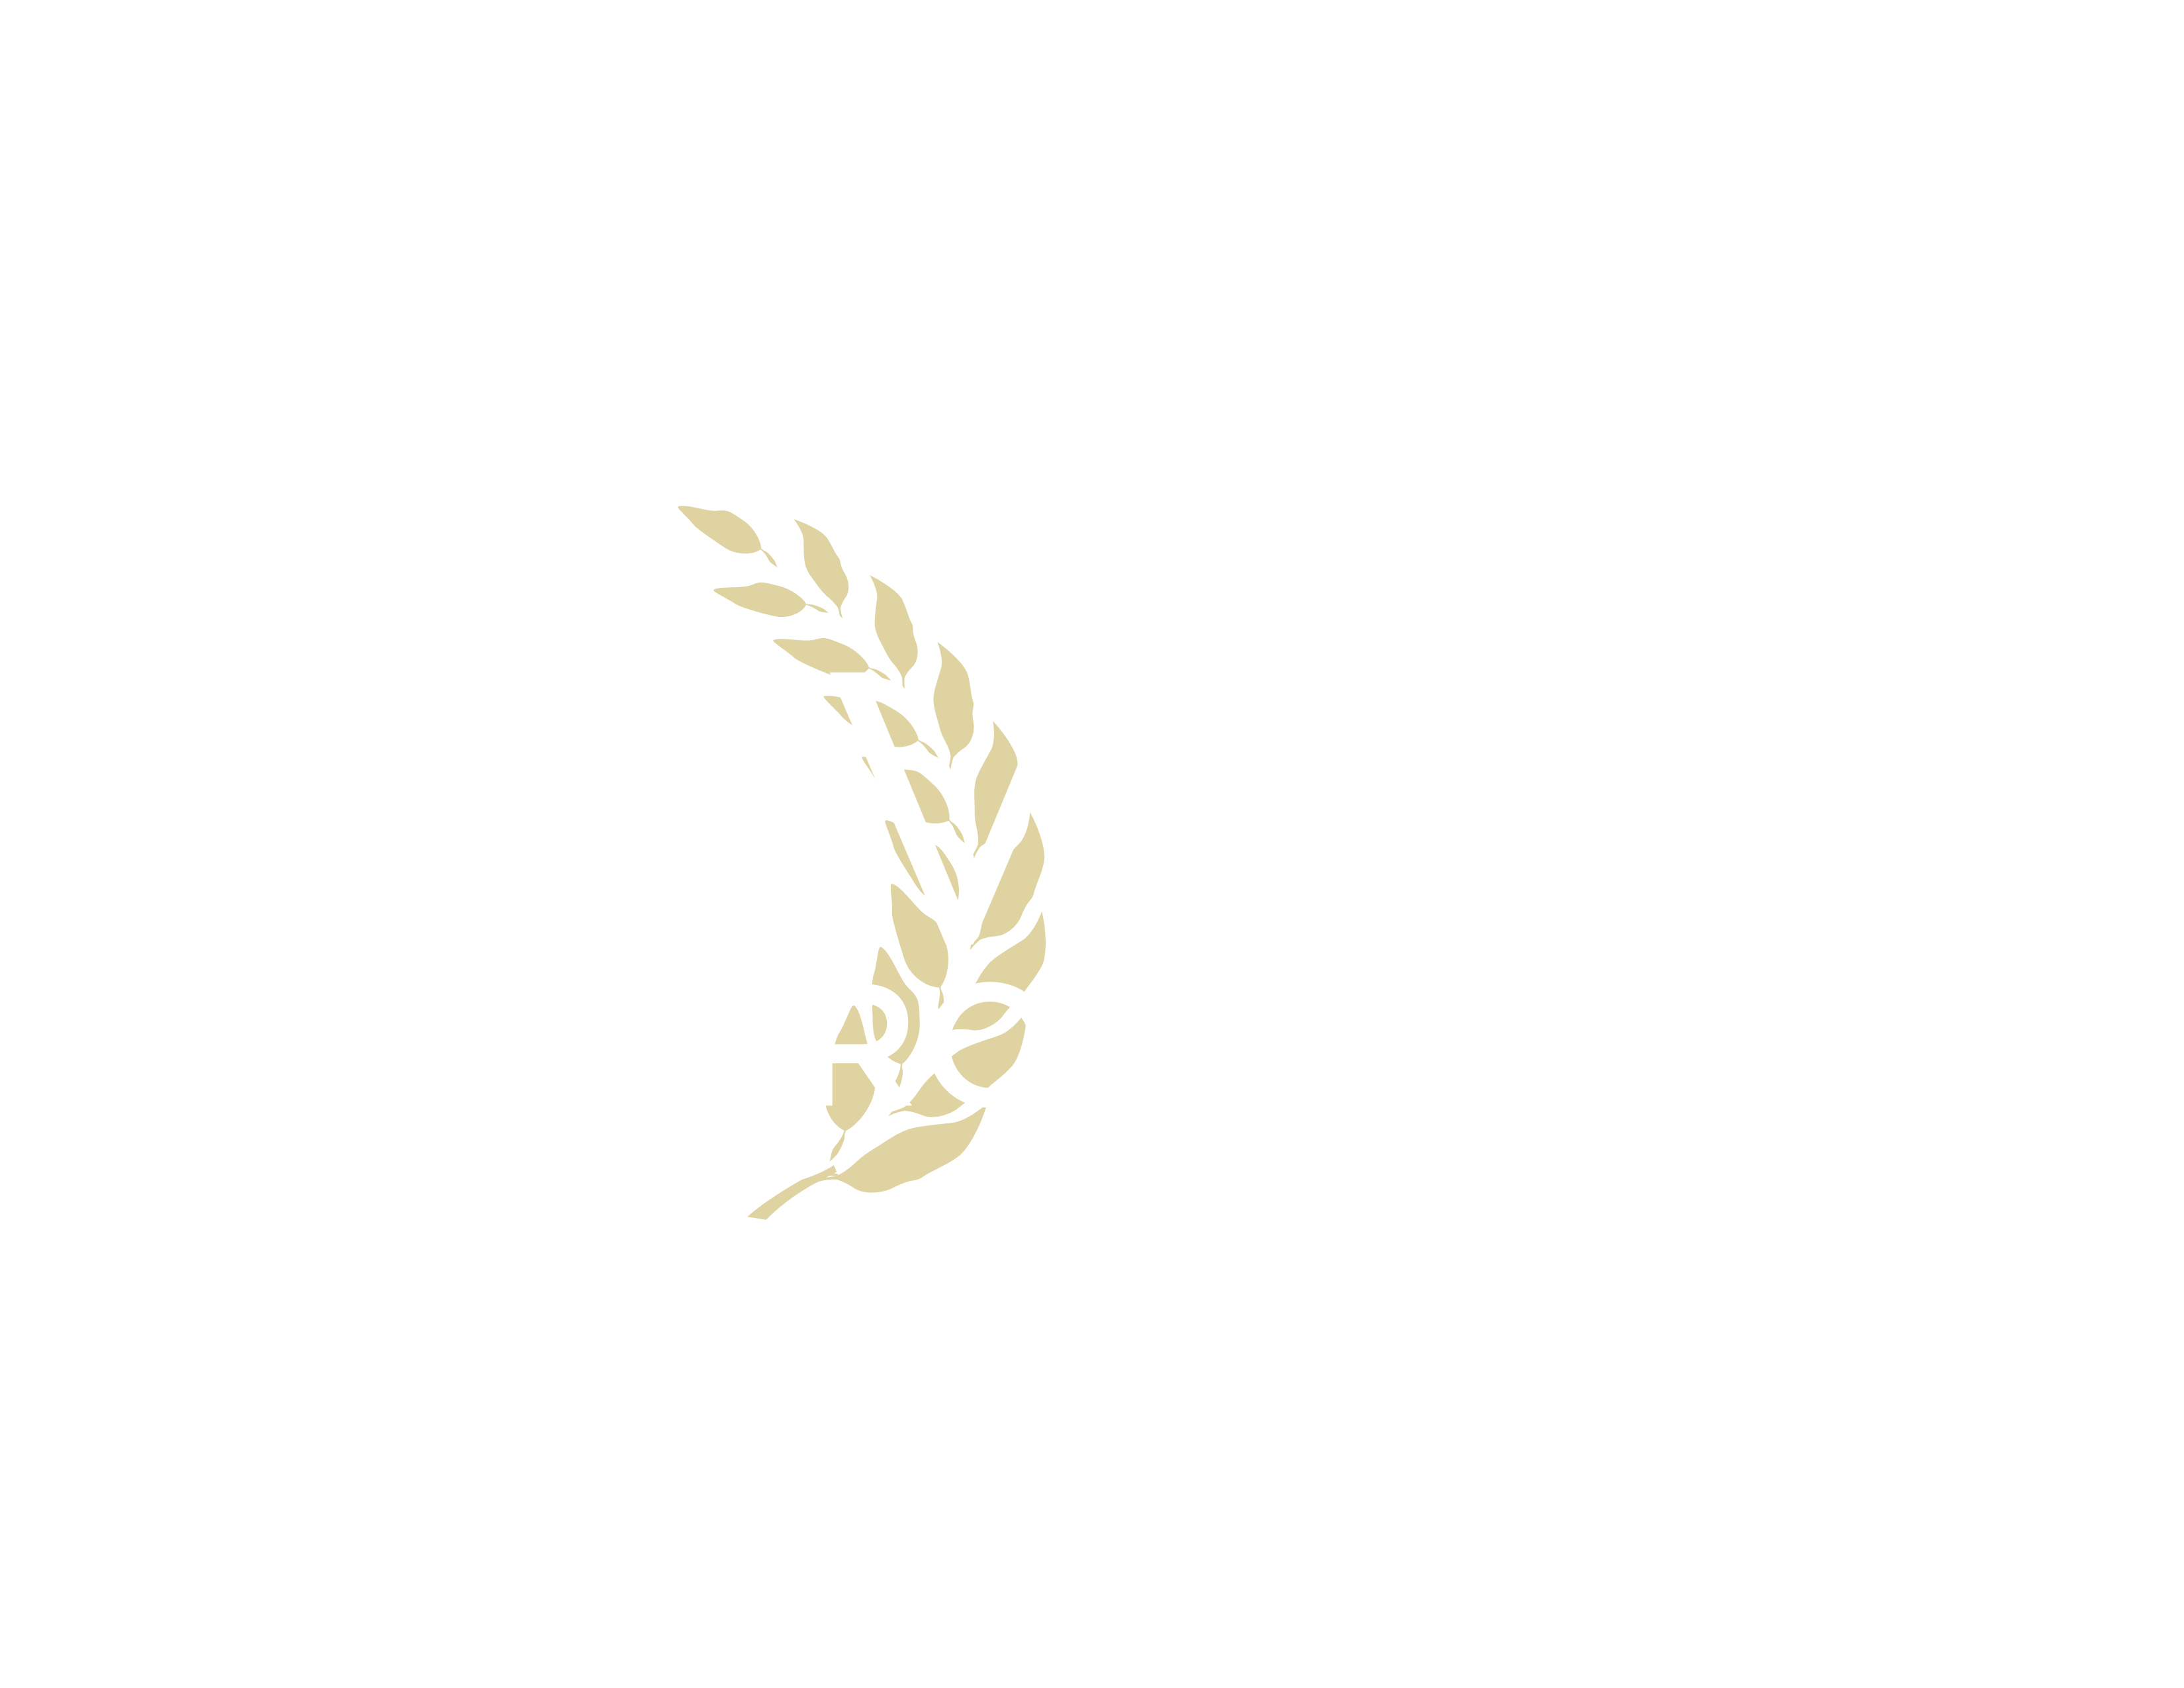 The Mavuno Project